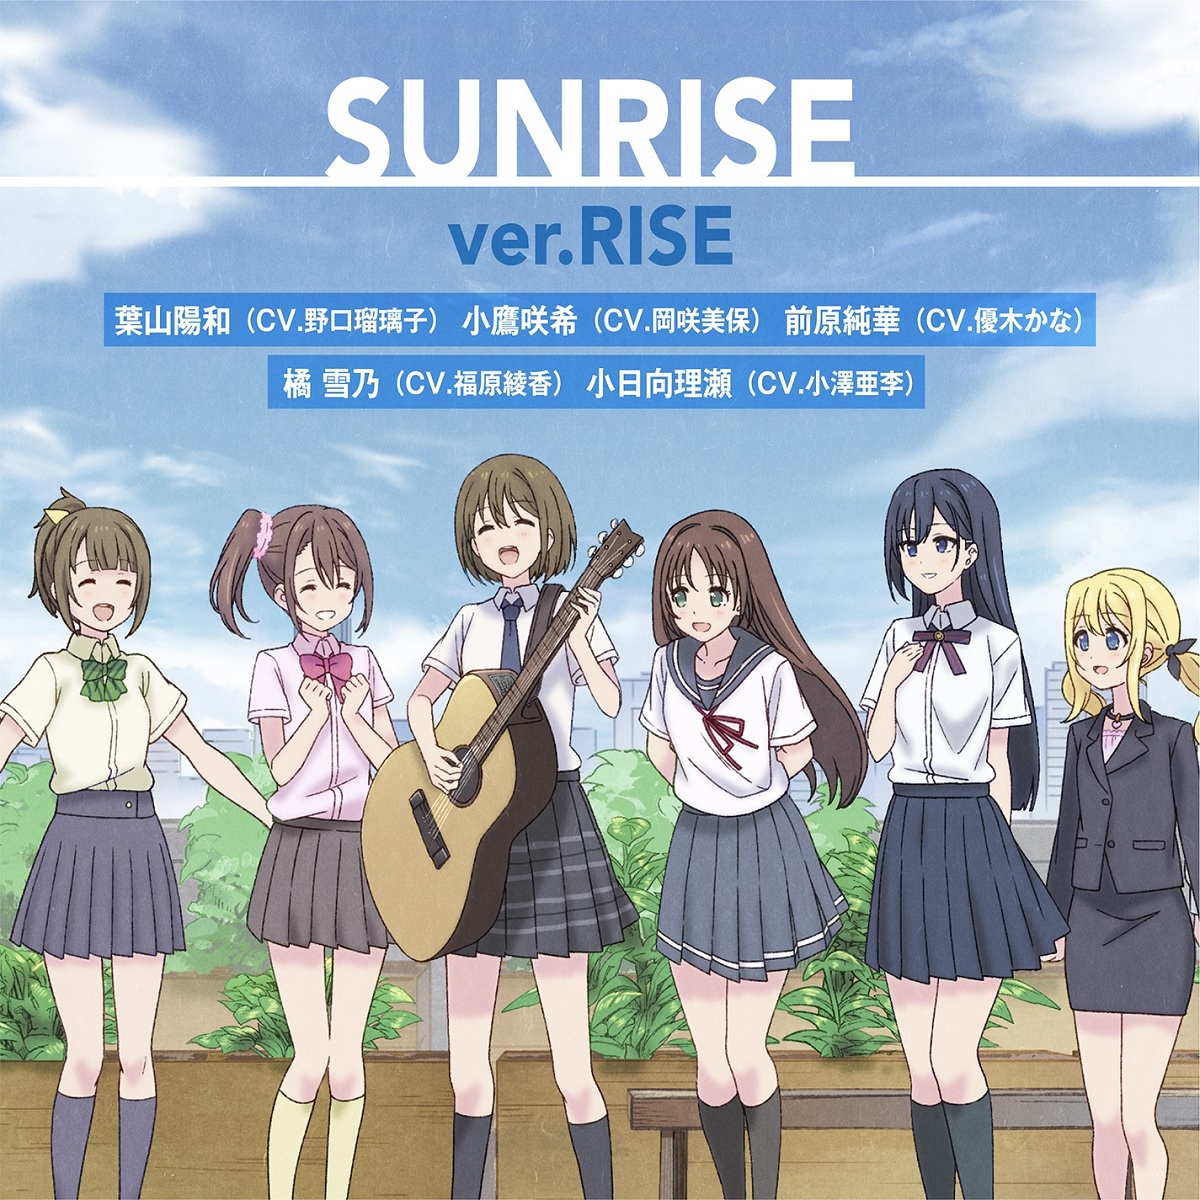 『RISE - SUNRISE (ver.RISE)』収録の『SUNRISE (ver.RISE)』ジャケット